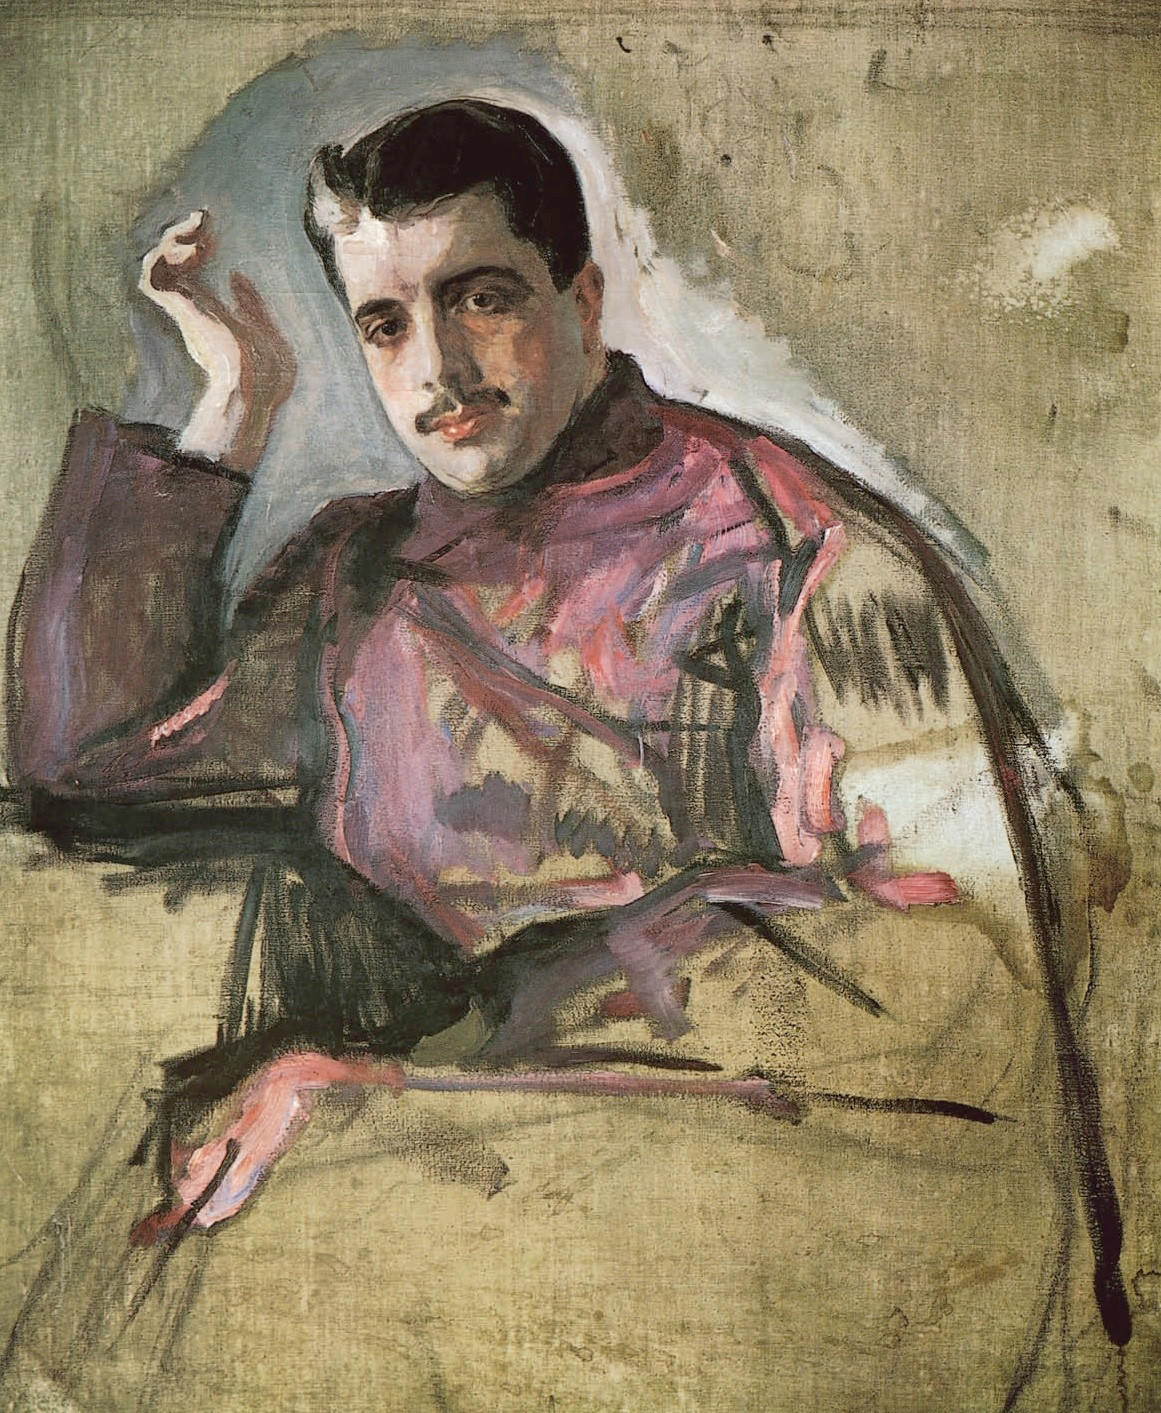 Portrait of Sergei Diaghilev by Valentin Aleksandrovich Serov